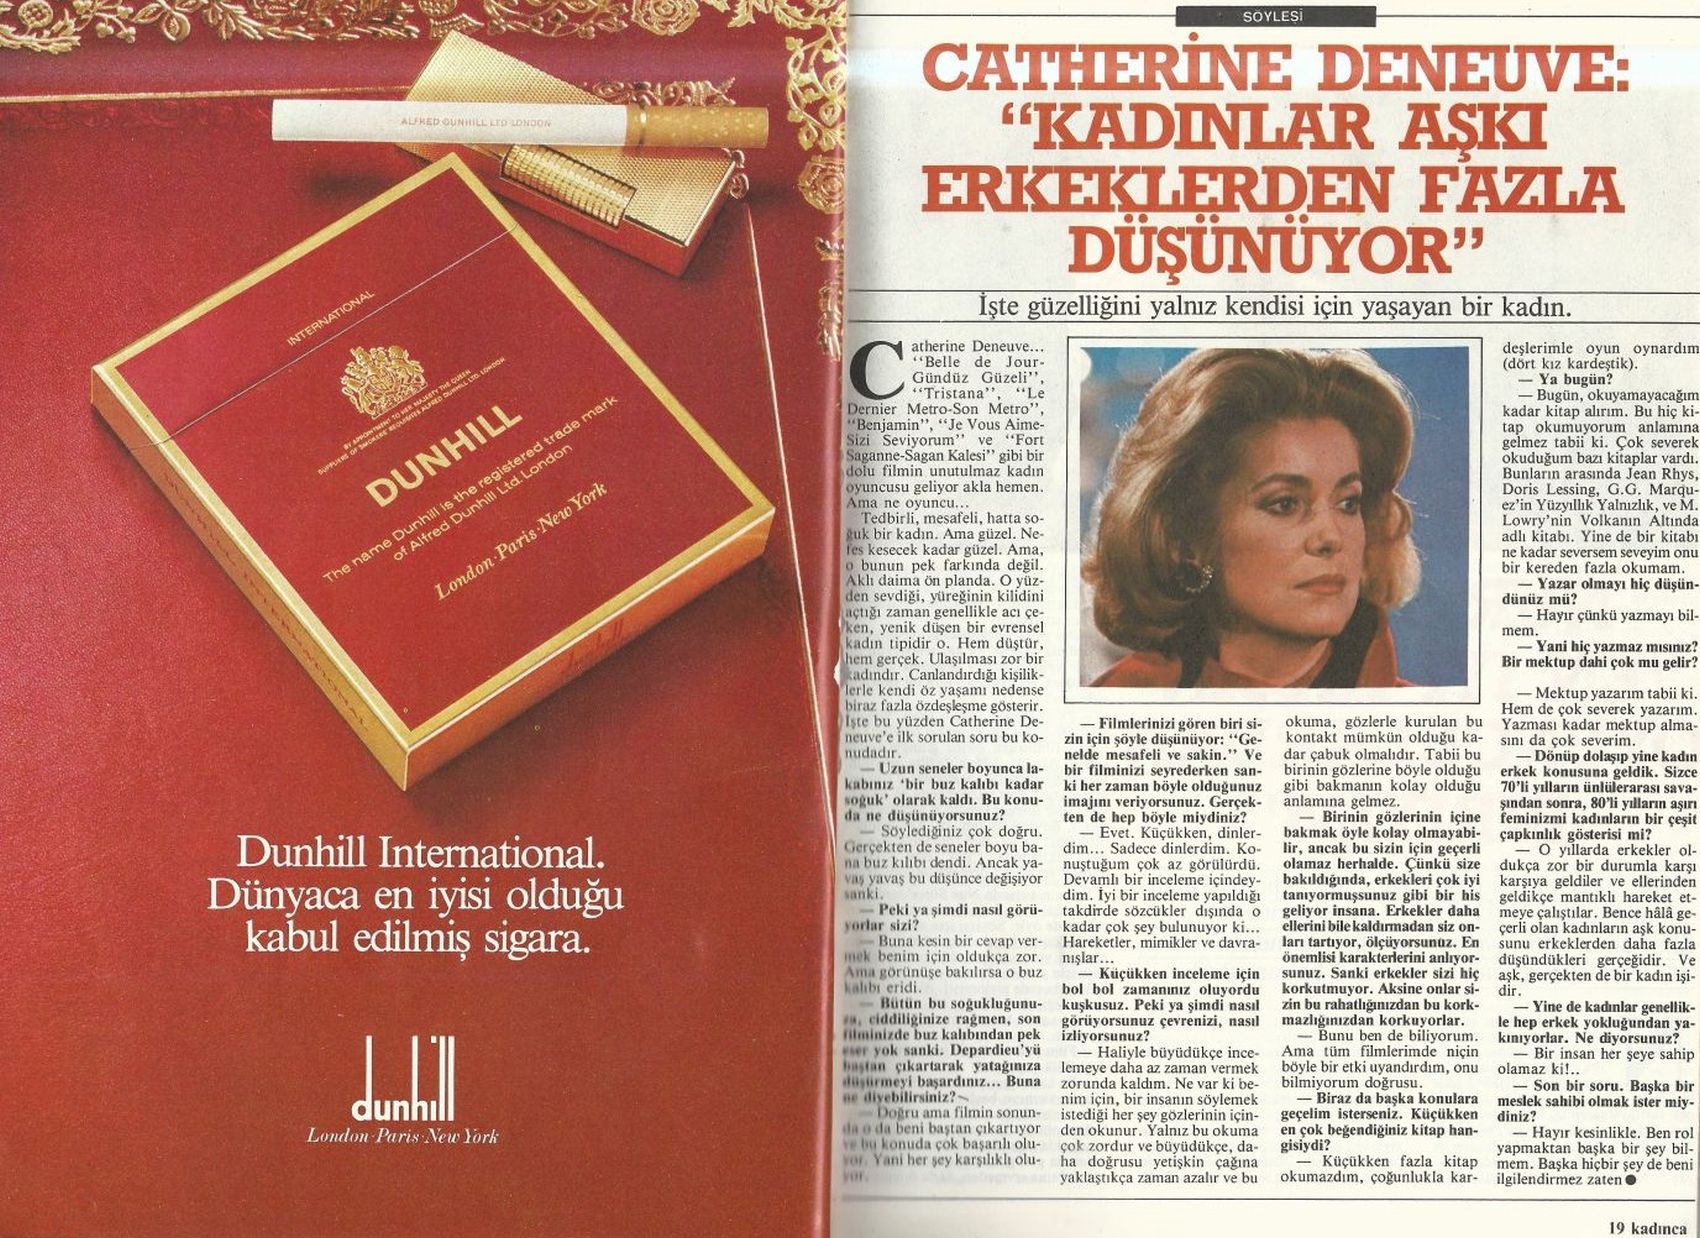 0285-dunhill-sigara-reklami-1985-yilinda-sigara-reklamlari